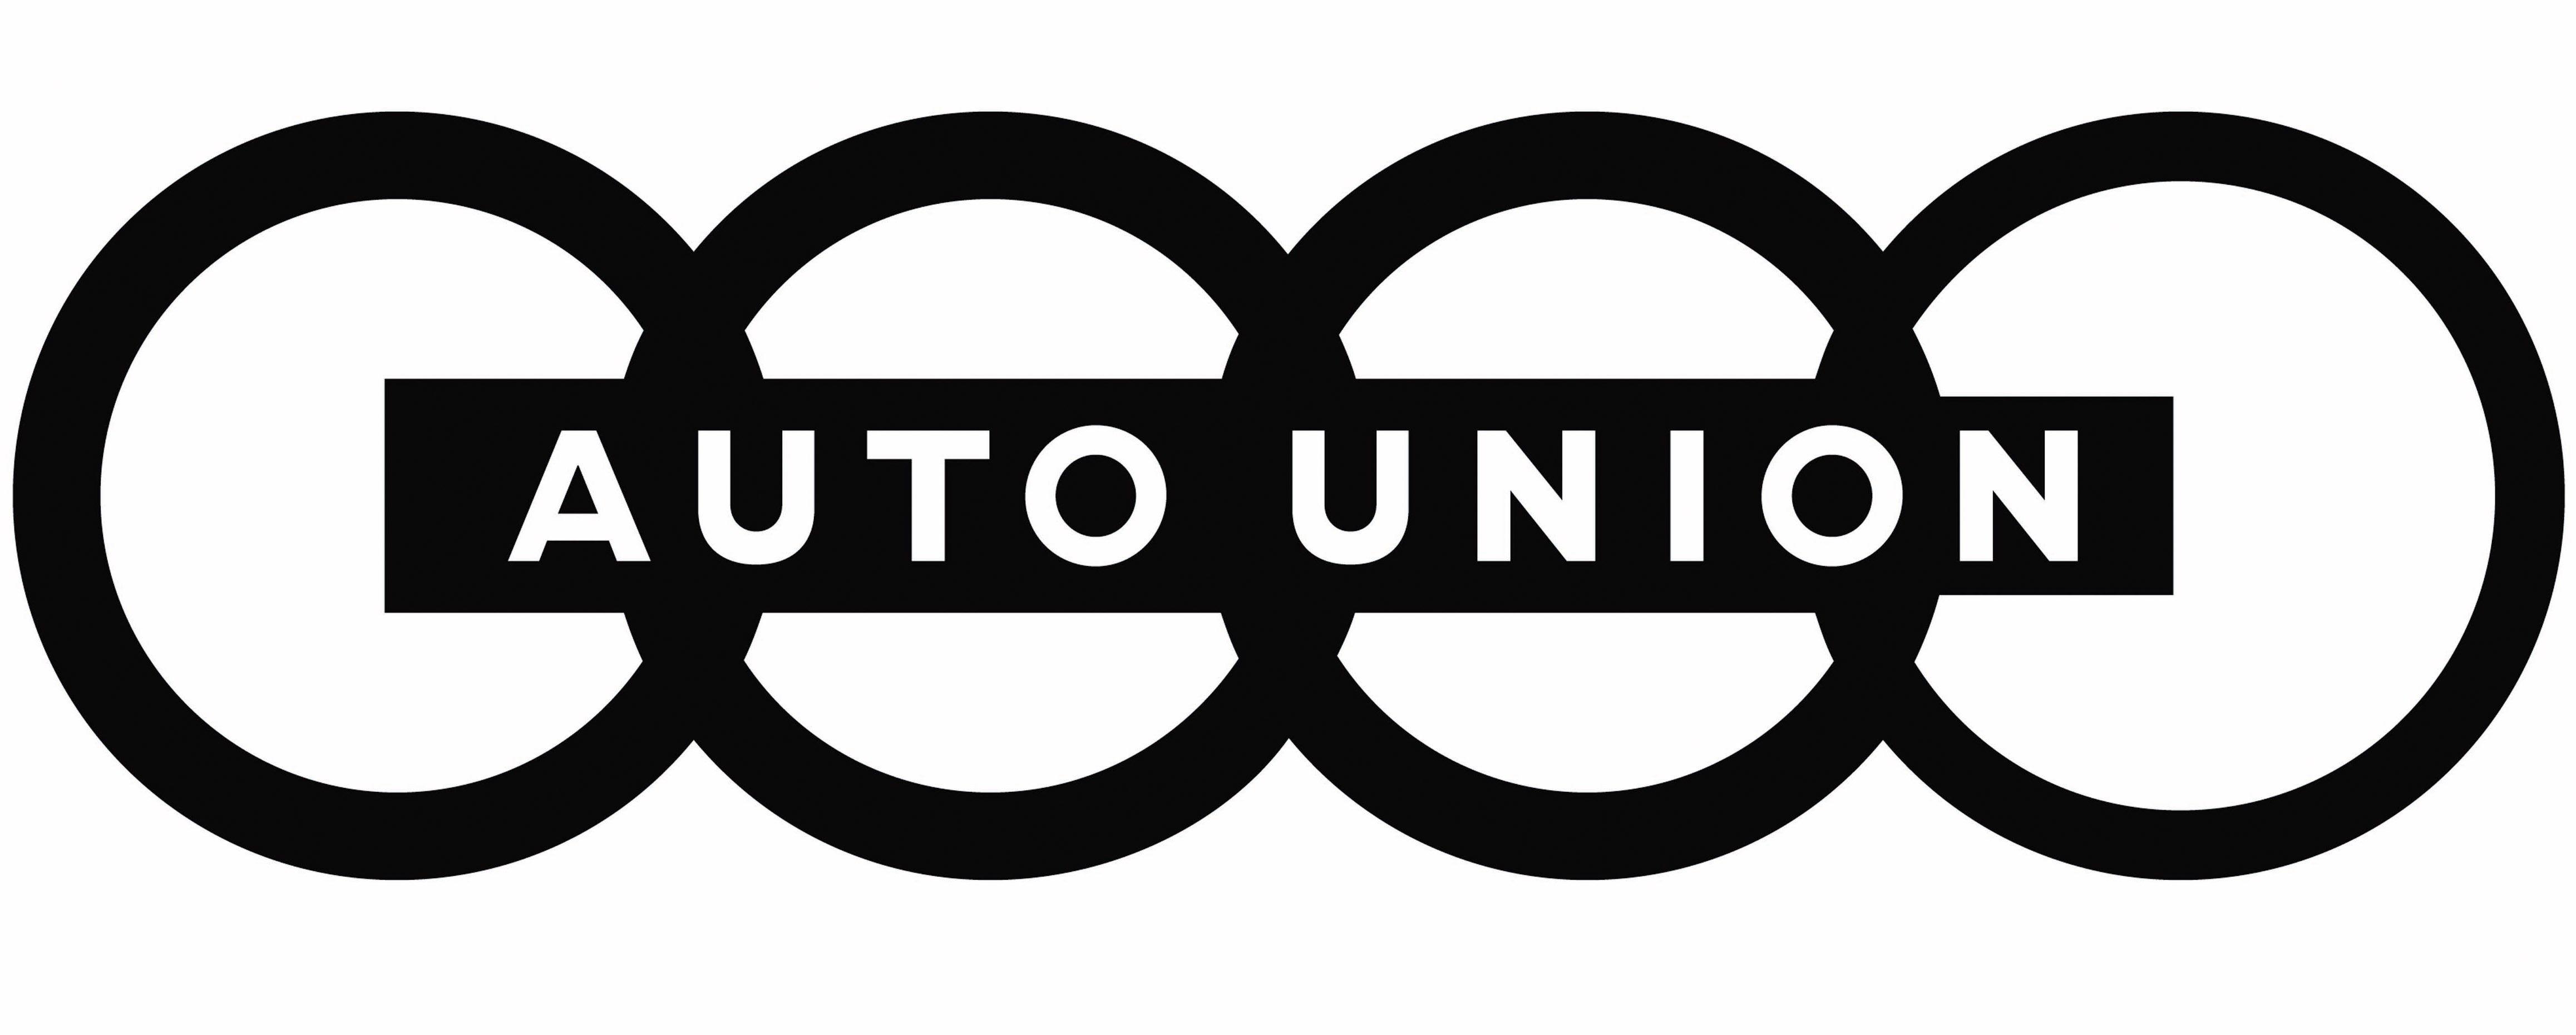 Old Audi Logo - Audi